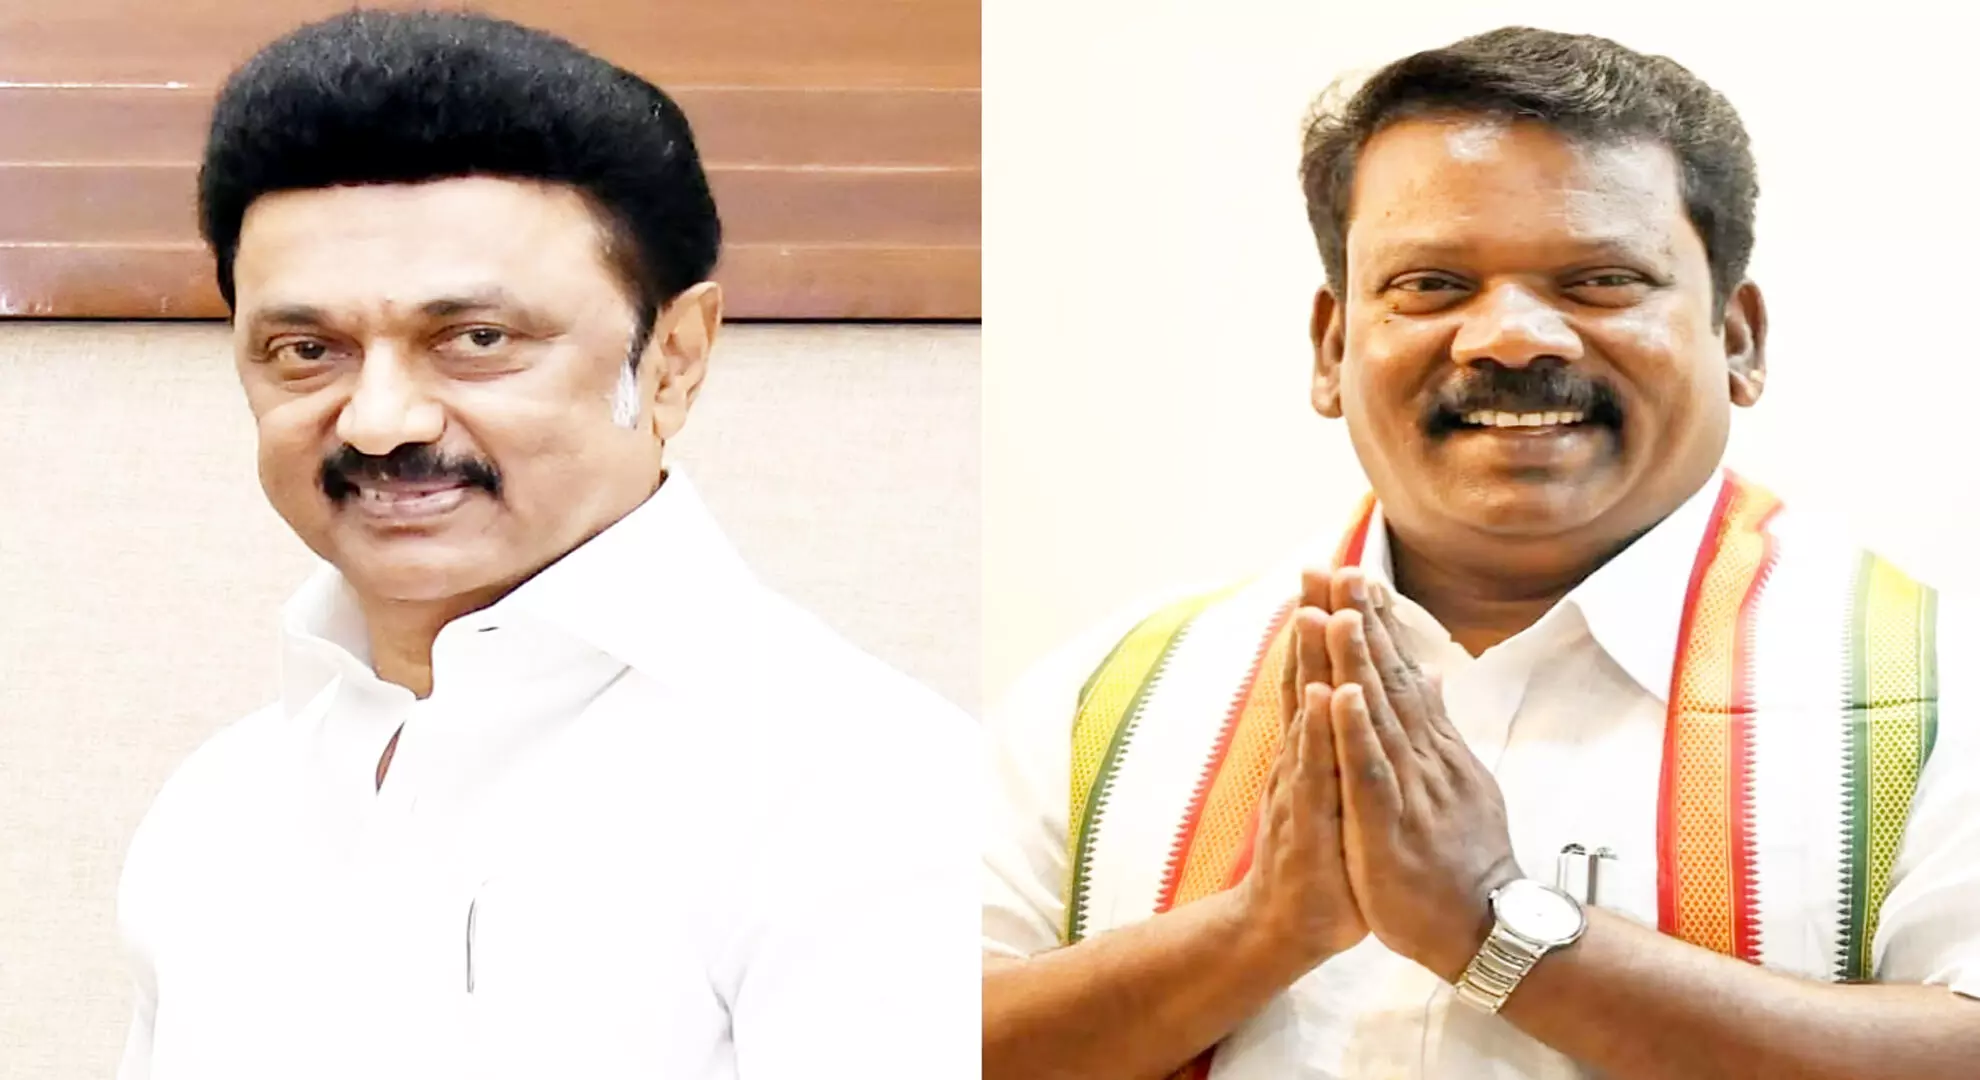 DMK के नेतृत्व वाले गठबंधन के तहत कांग्रेस तमिलनाडु में 9 सीटों पर और पुडुचेरी में एक सीट पर चुनाव लड़ेगी